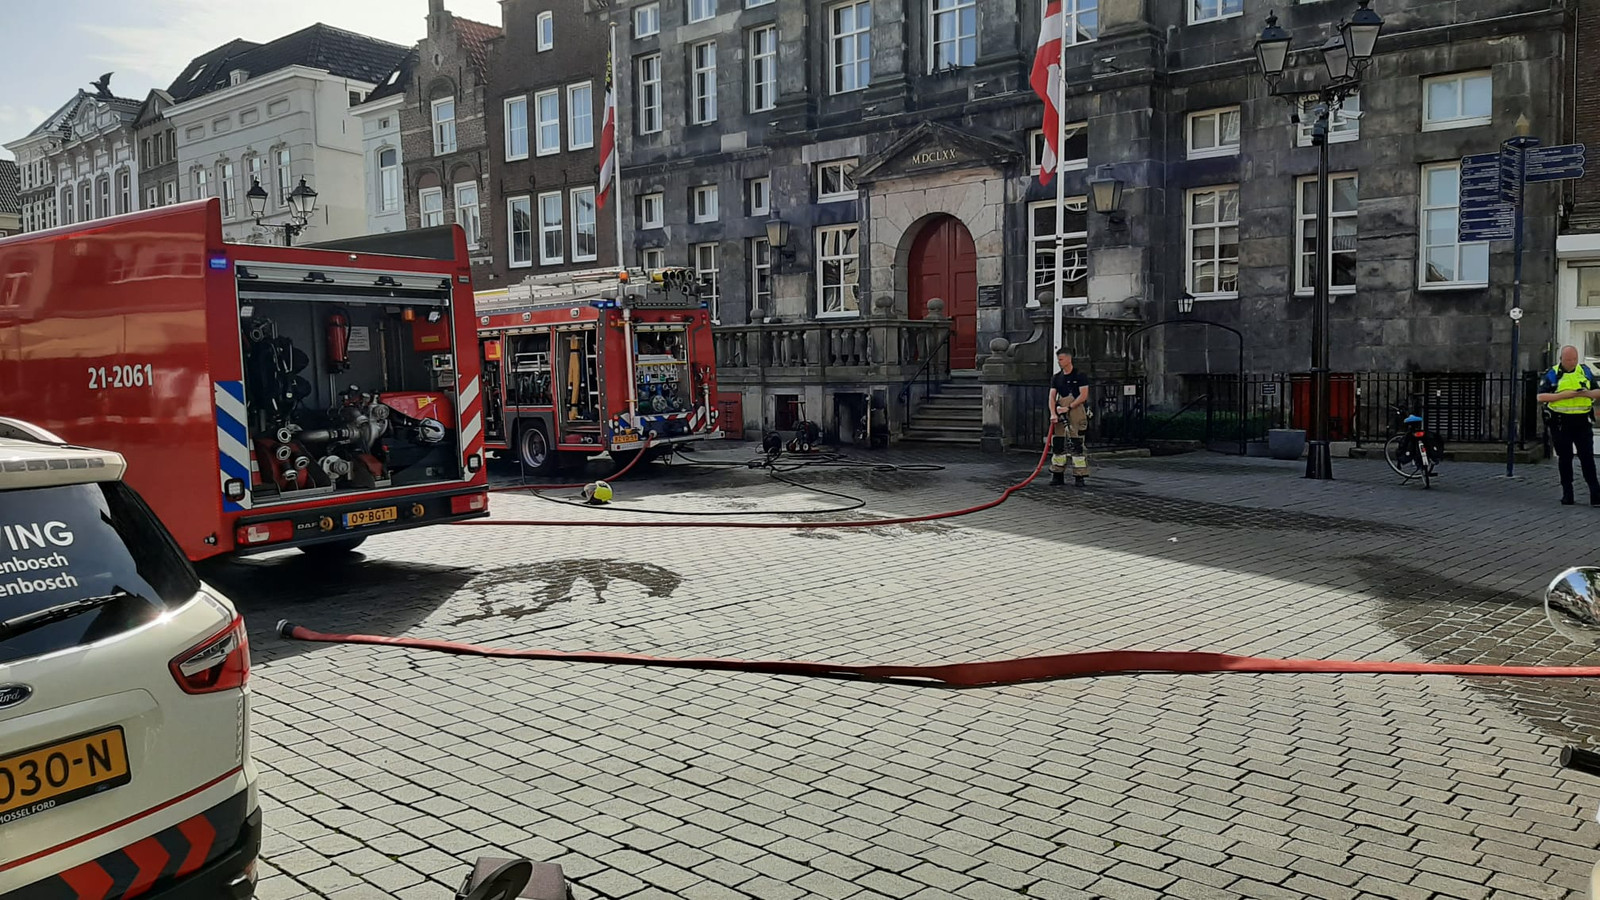 De brandweer ging ter plaatse om het vuur te blussen in het stadshuis van Den Bosch.